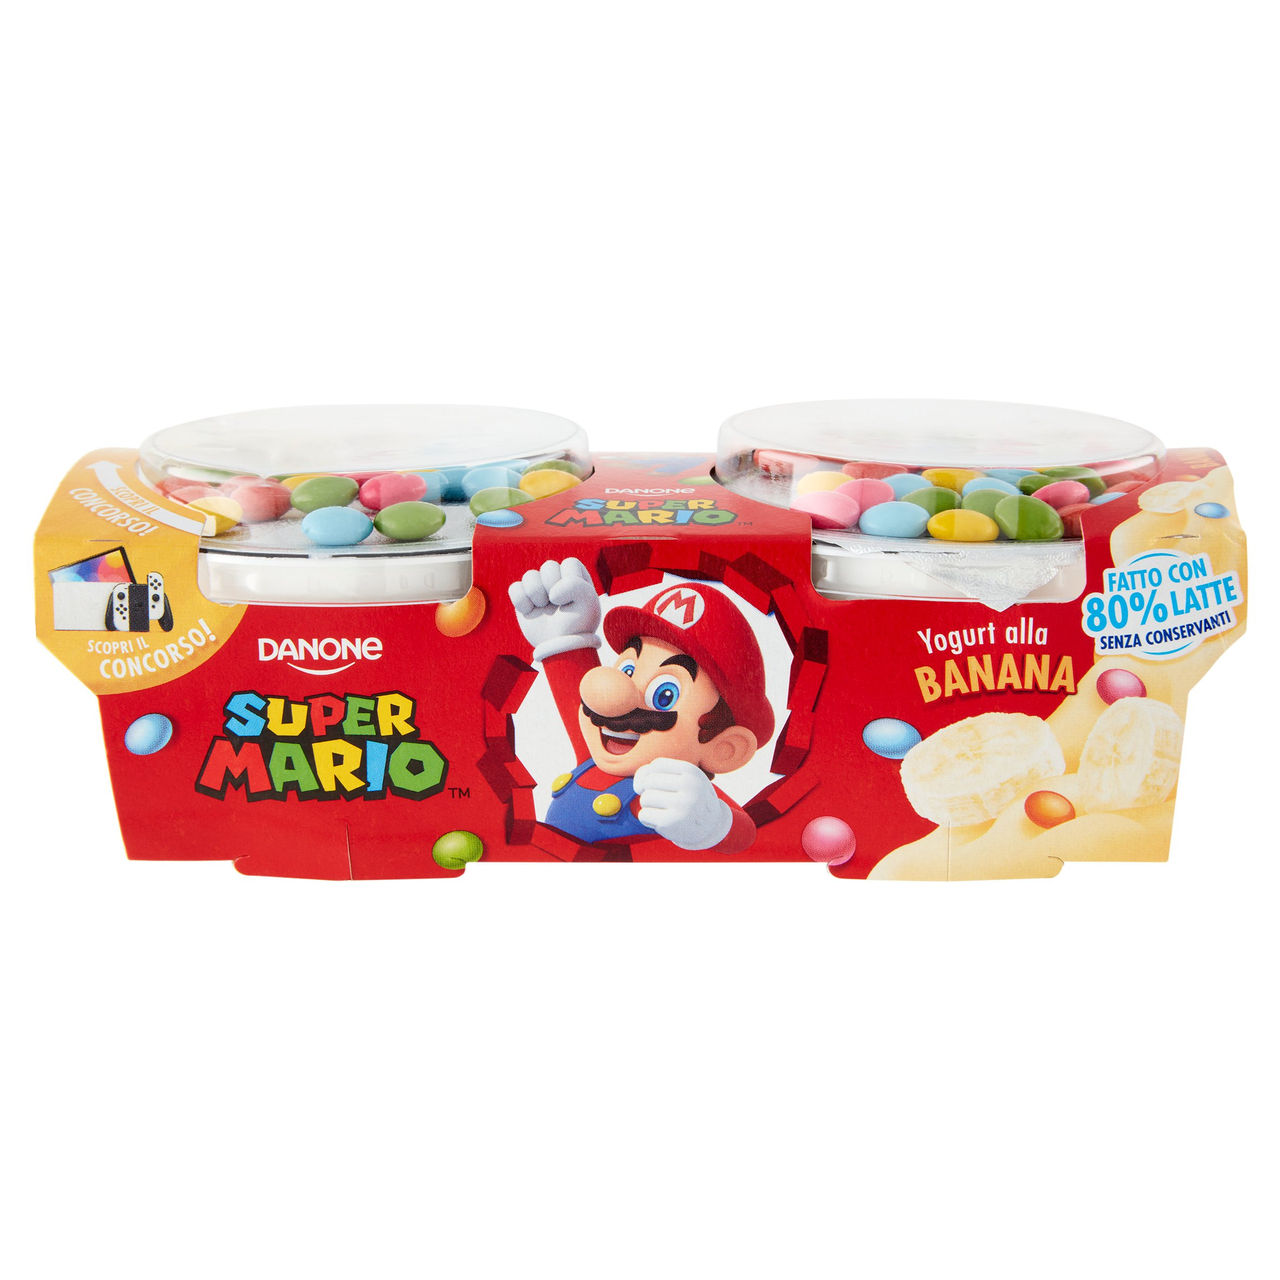 Danone Super Mario, Yogurt gusto Banana con Confettini, 2x110g